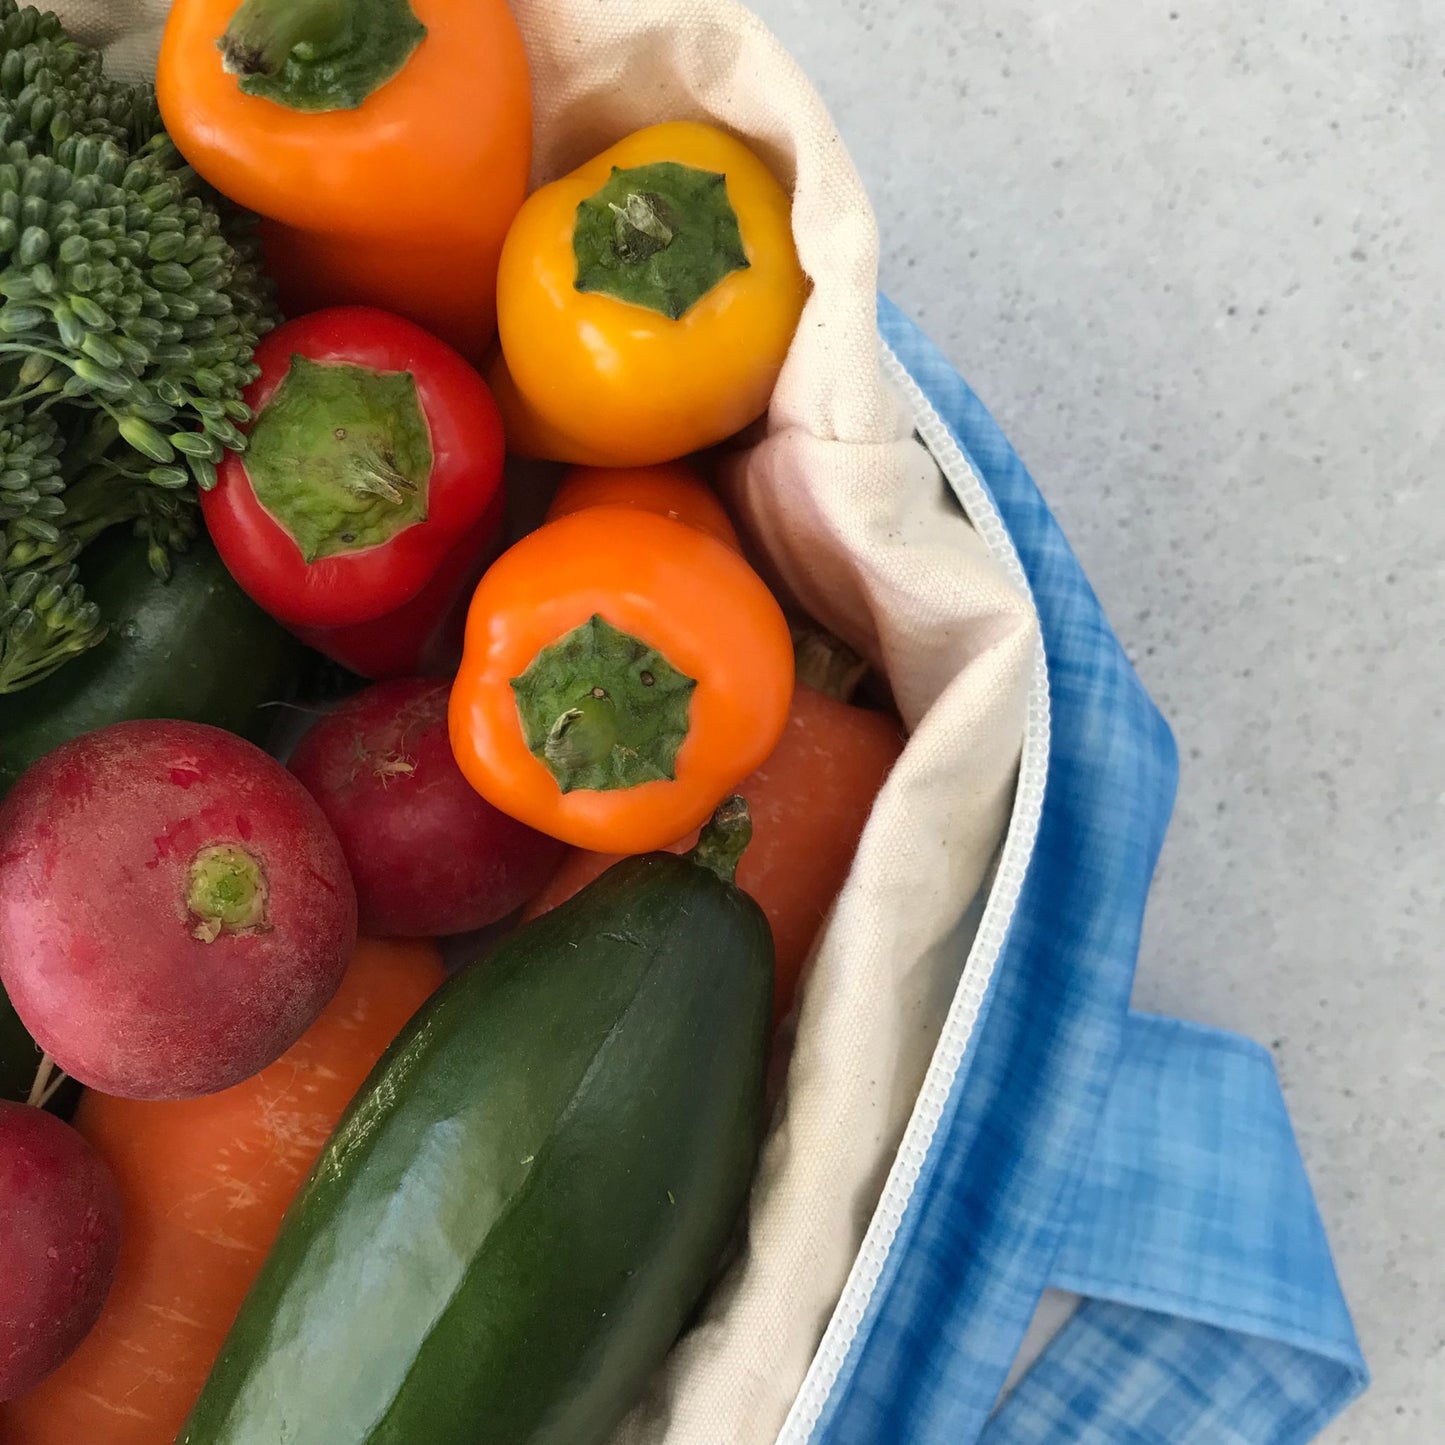 Produce Pod - reusable veggie bag for fridge - Blueberry PRE ORDER